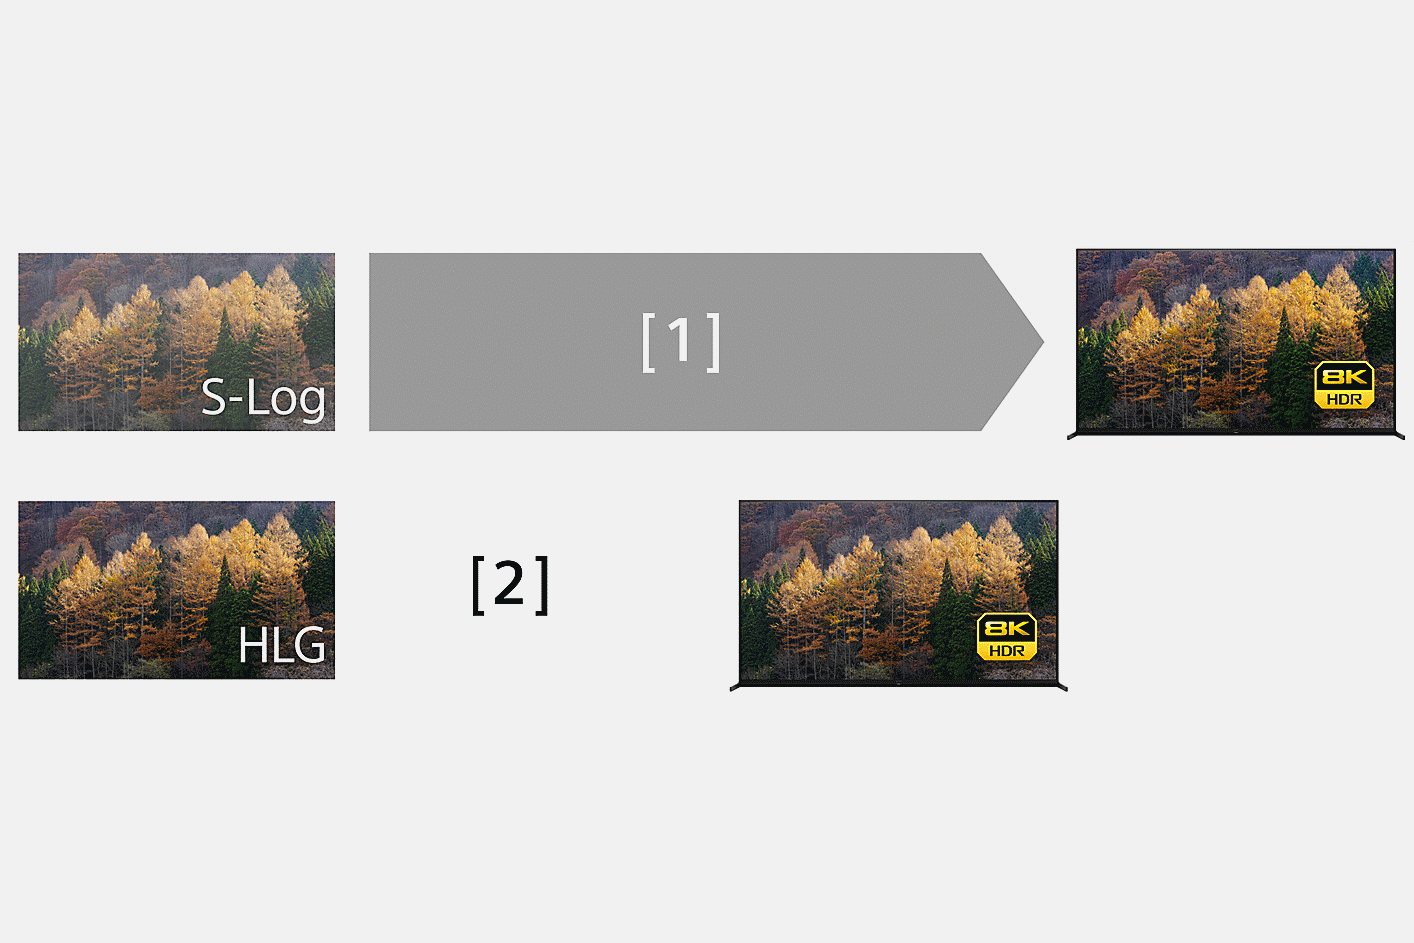 To billeder med længere og kortere pile, der angiver forskellige produktionstider